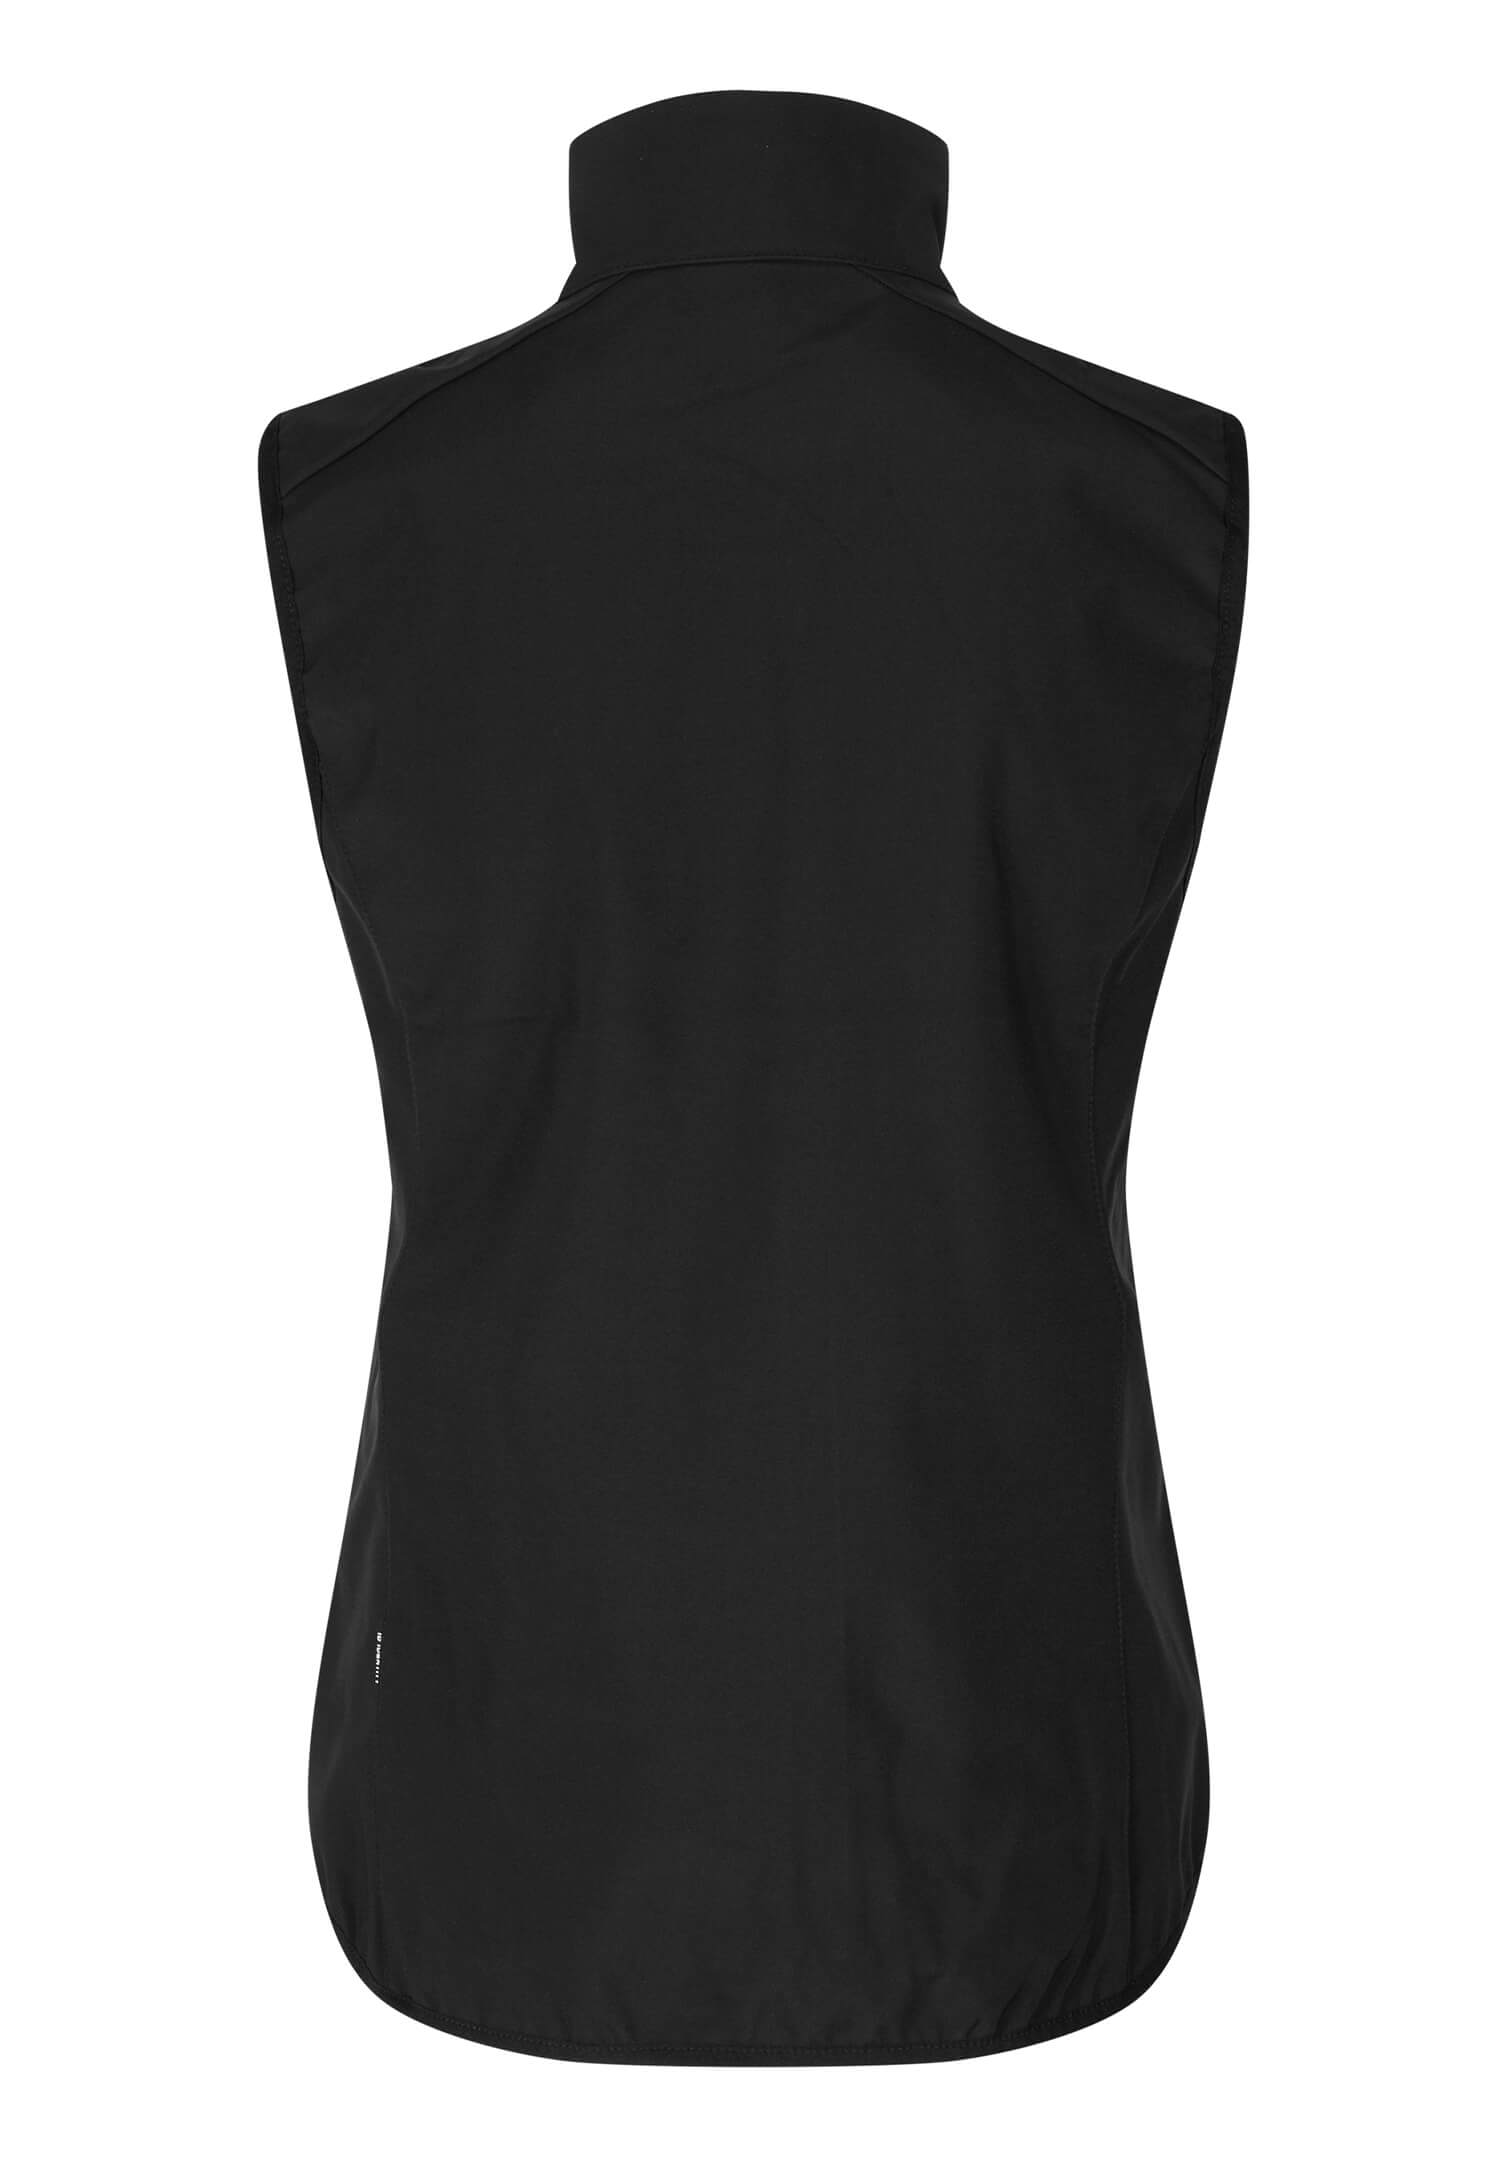 Damen Softshell Weste Classic Größe: L Farbe: schwarz